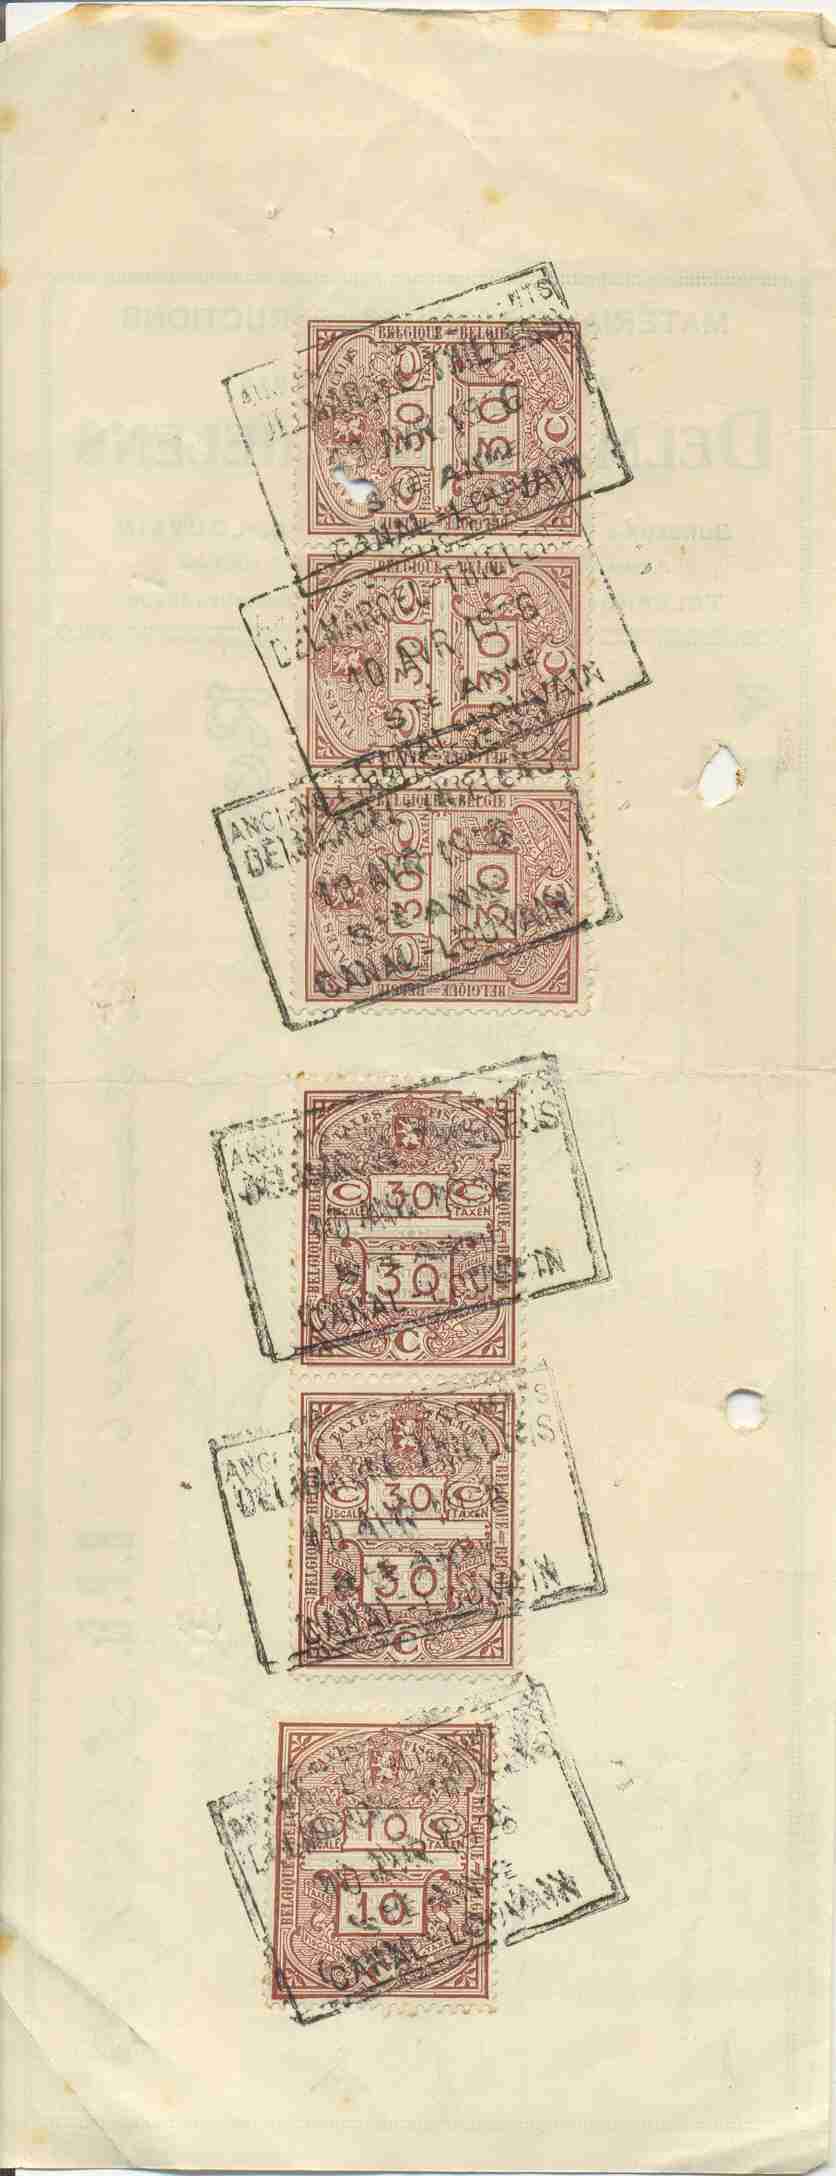 Fiscale Zegels Op Document , 1926 , Zie Scans Voor Schade, (2de Scan Zijn De Zegels Van Document) - Documents